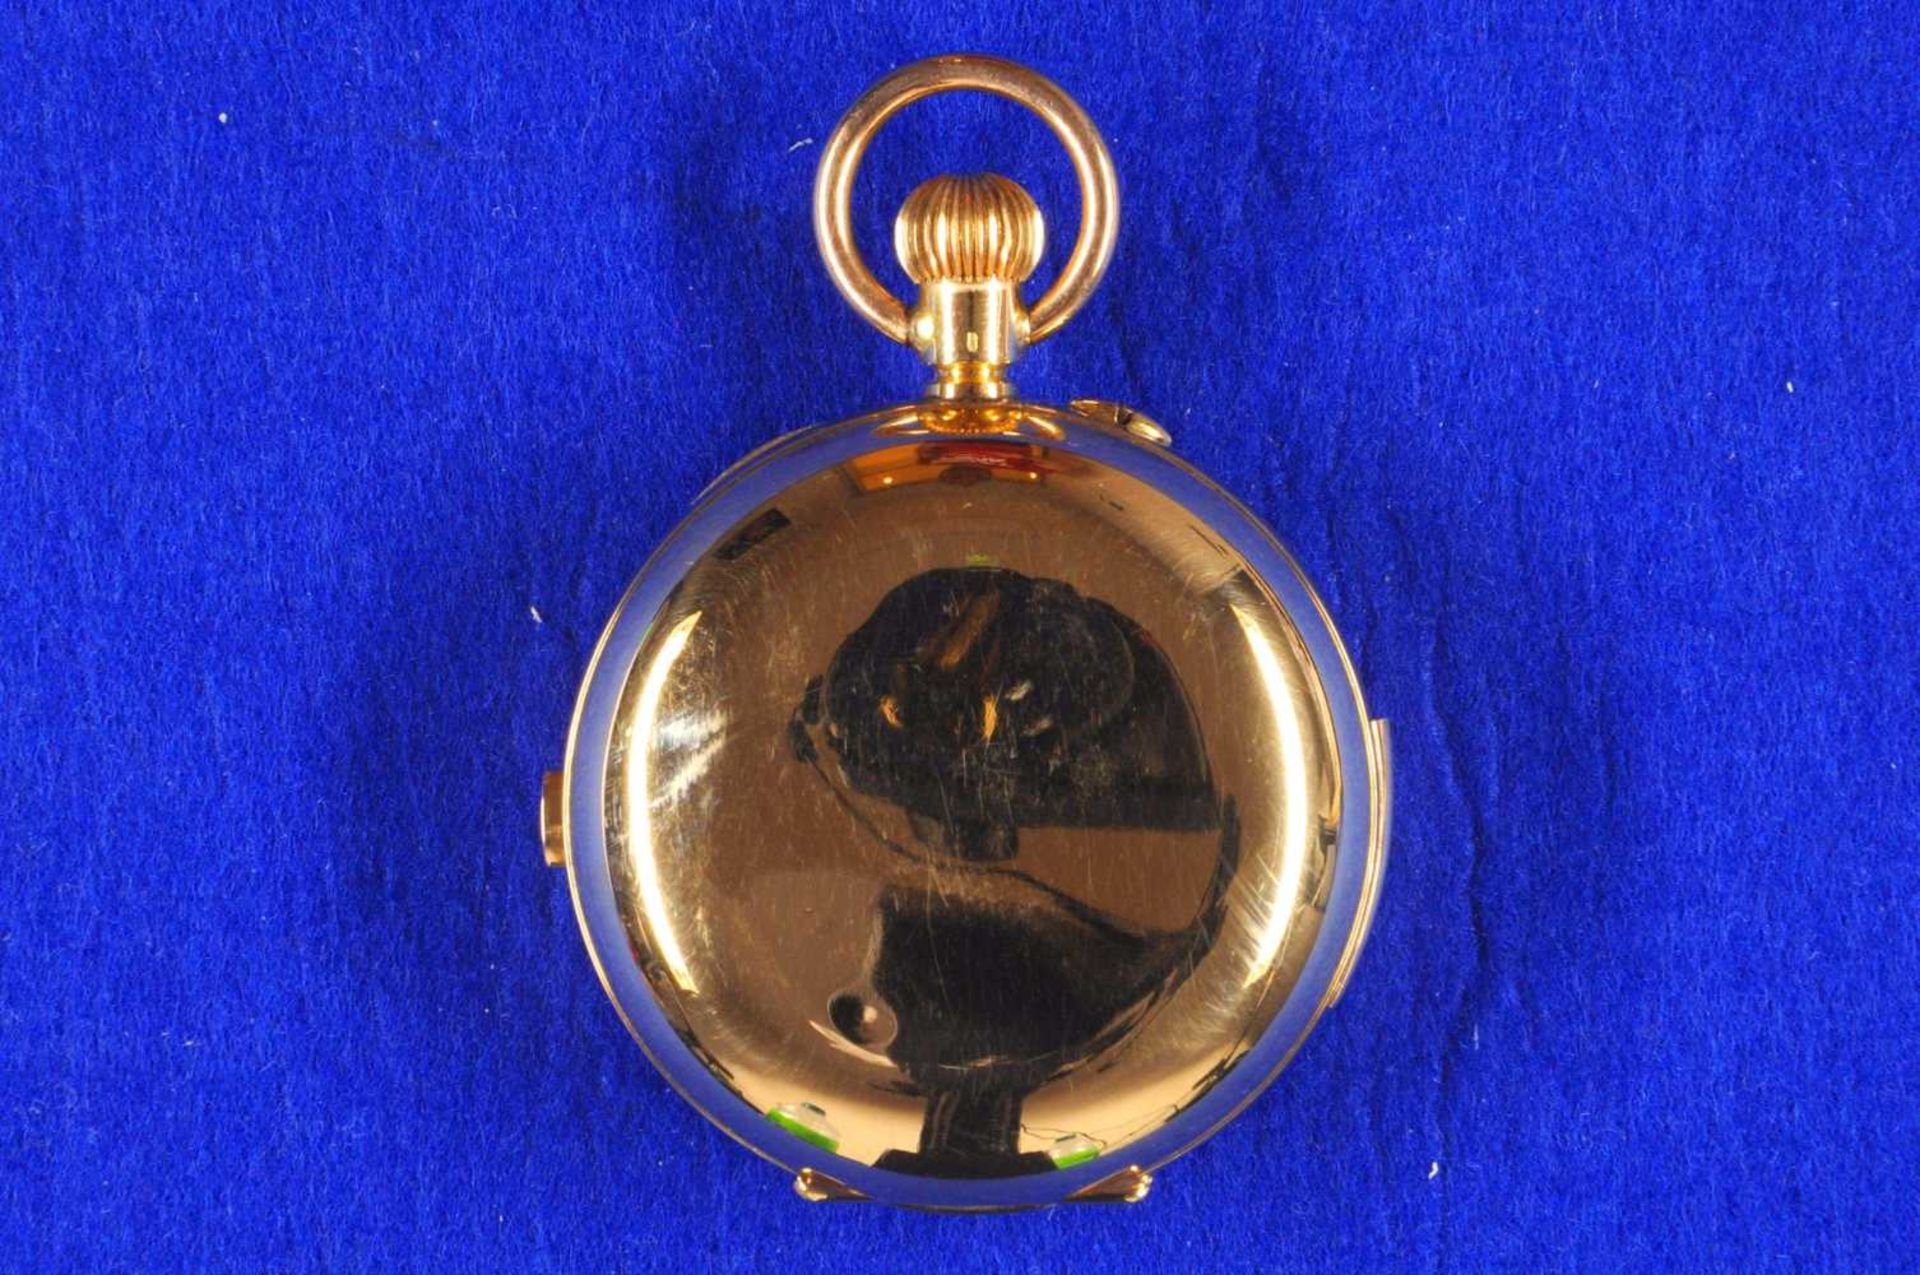 Grand Complication Chronograph Taschenuhr von etwa 1880. Ca. 55mm, 750er Rotgold, Handaufzug. Emaill - Bild 4 aus 4